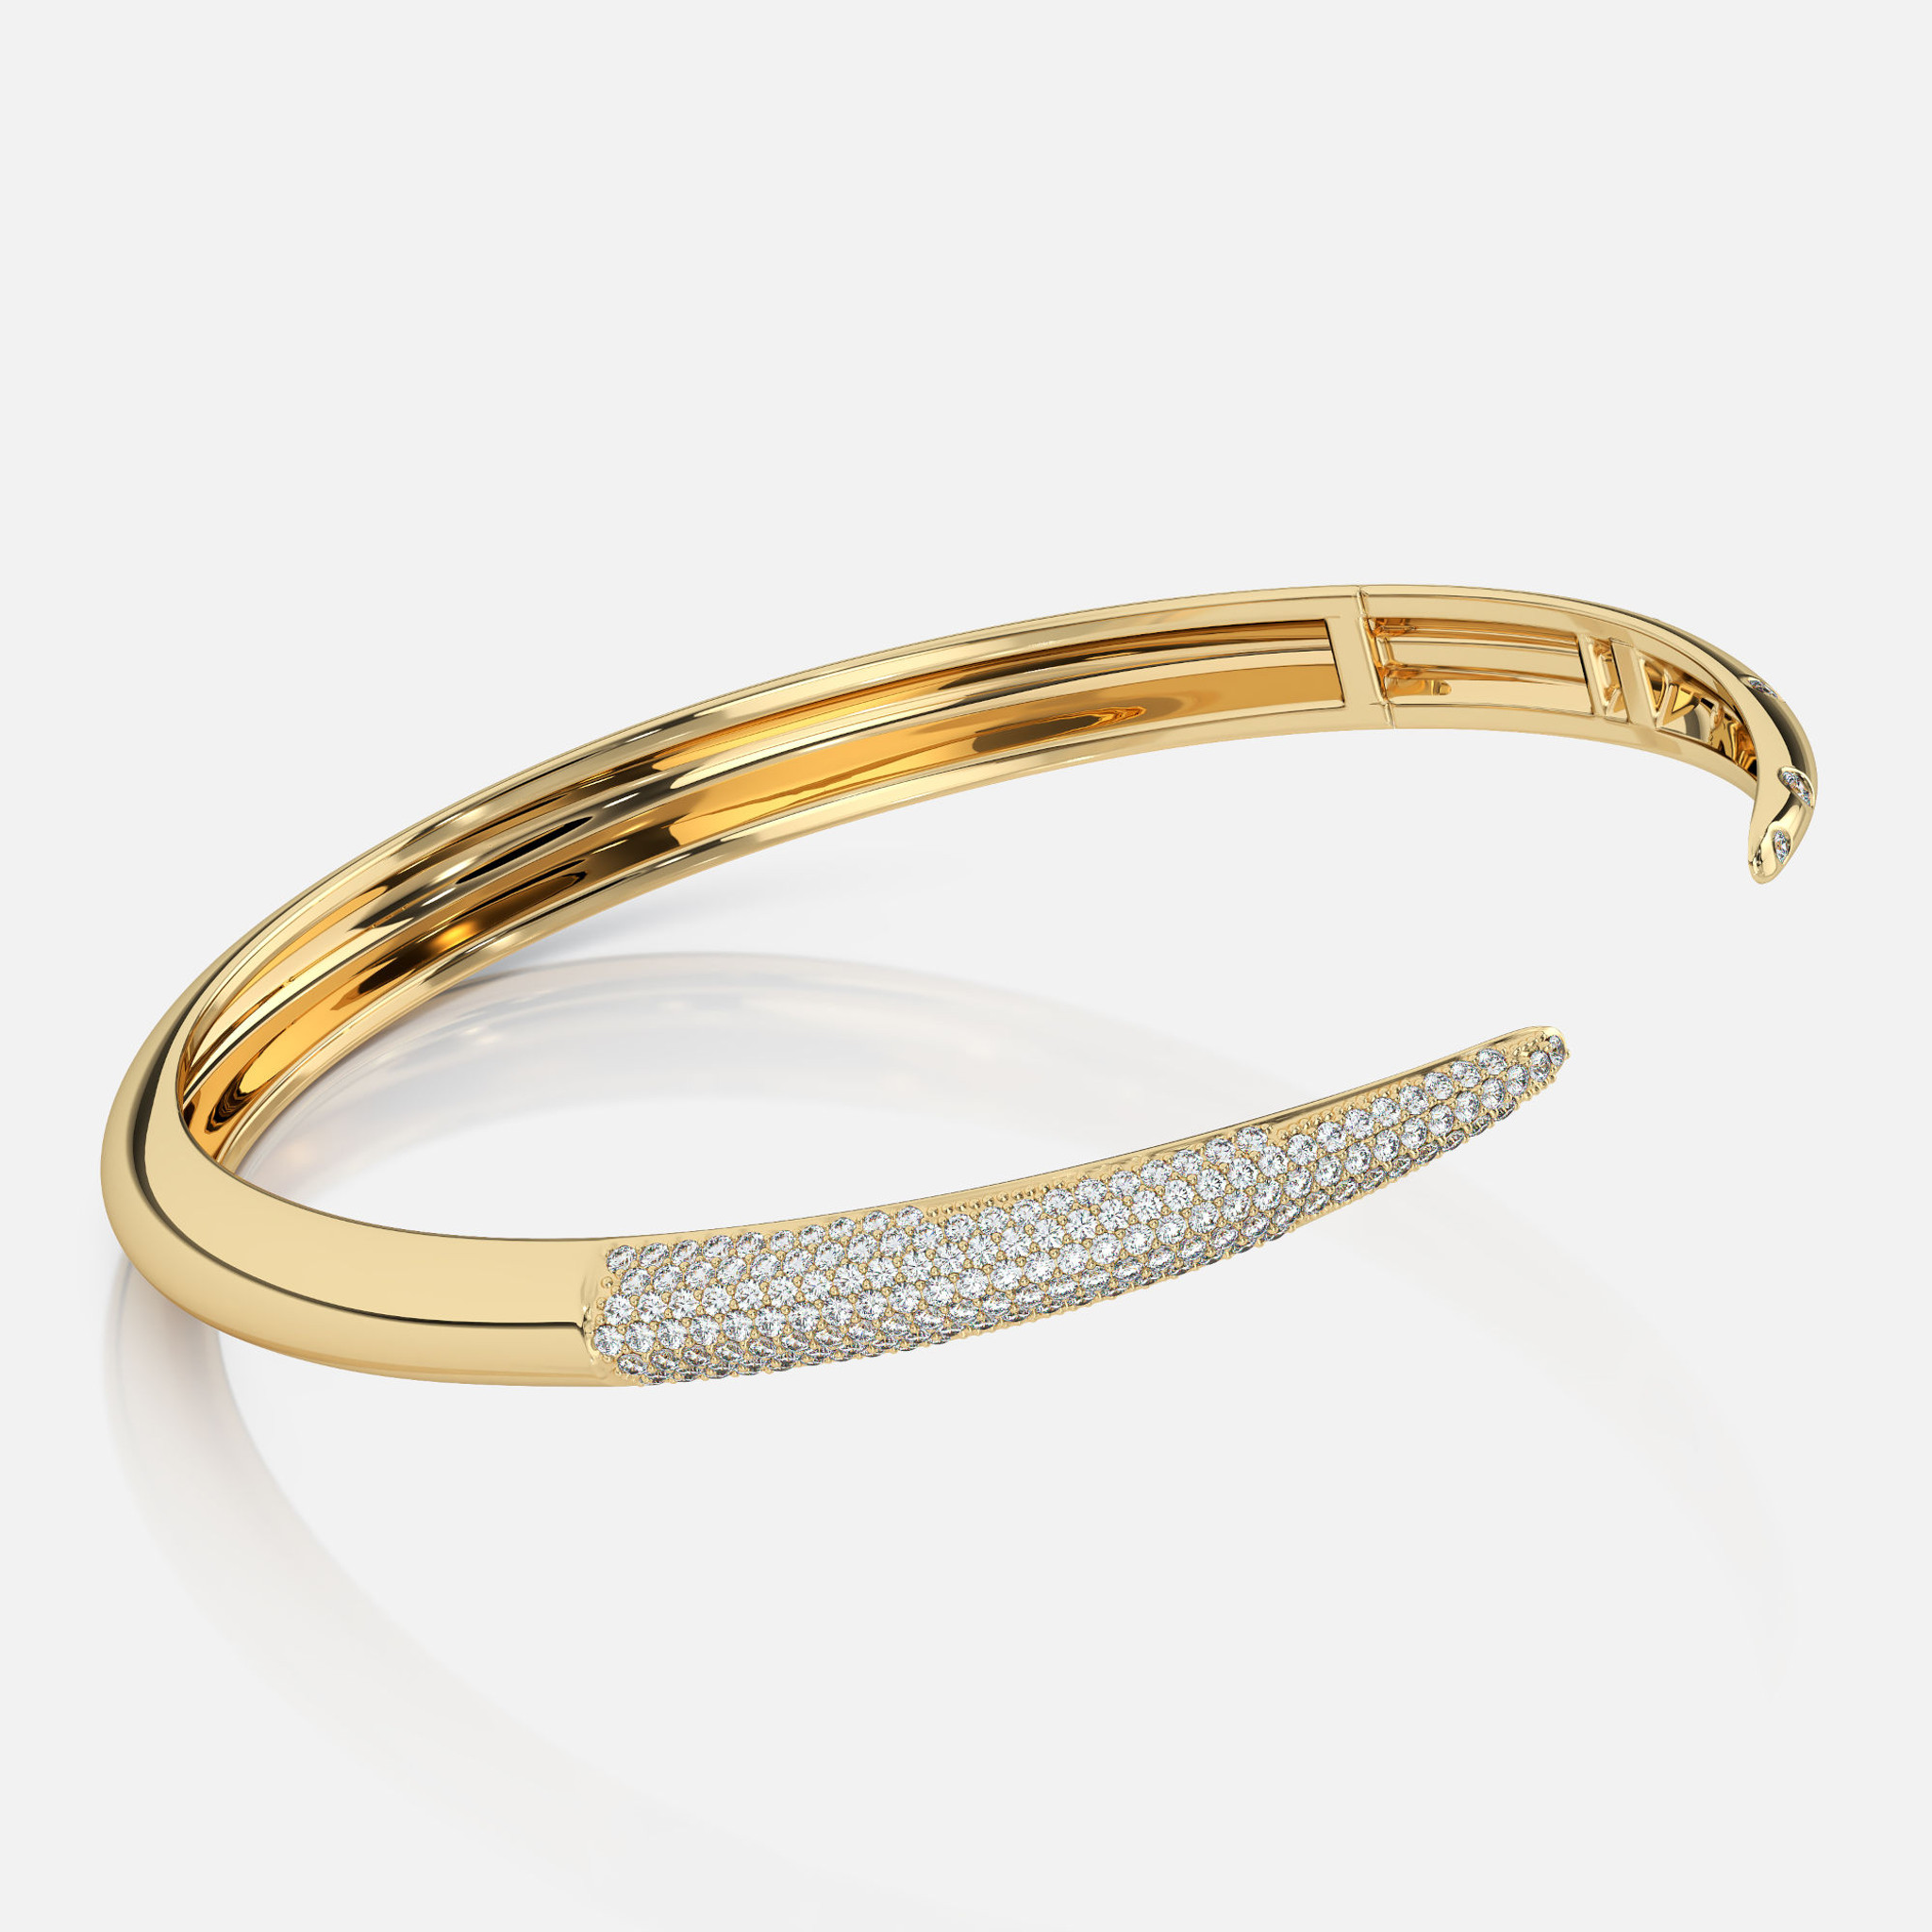 Elegancia sin esfuerzo: una pulsera brazalete de diamantes de oro de 14k, el epítome de la sofisticación chic con 0,49ct de diamantes micro y talla brillante.